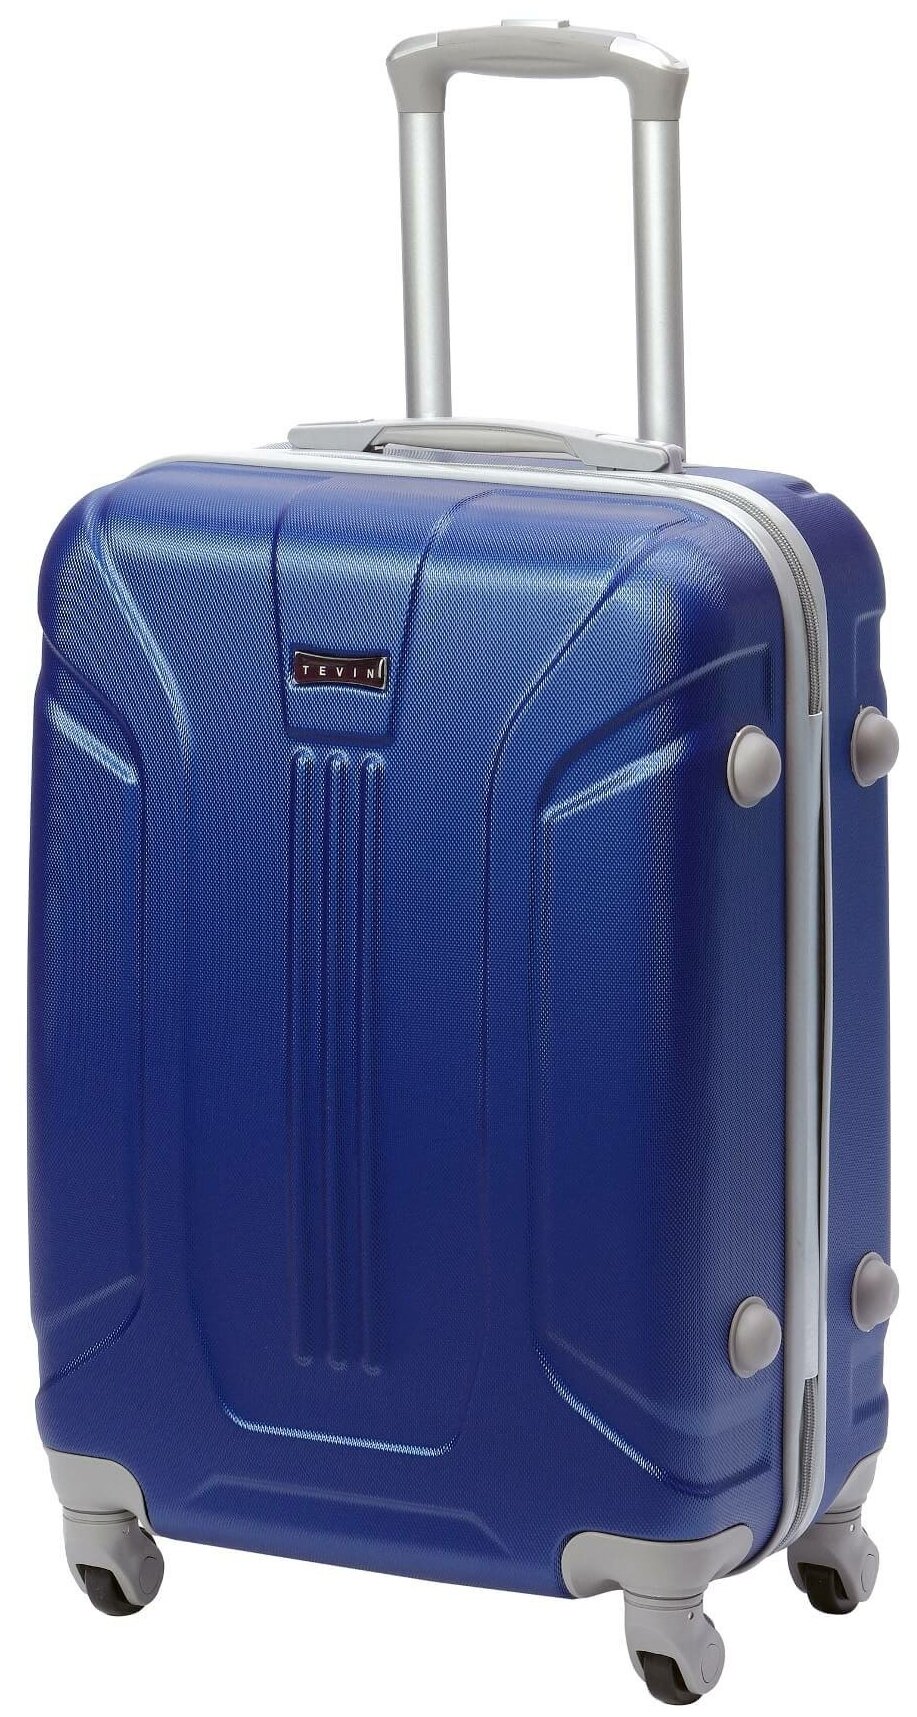 Чемодан на колесах дорожный средний багаж на двоих для путешествий мужской m+ TEVIN размер М+ 68 см 77 л легкий и прочный абс пластик Синий яркий